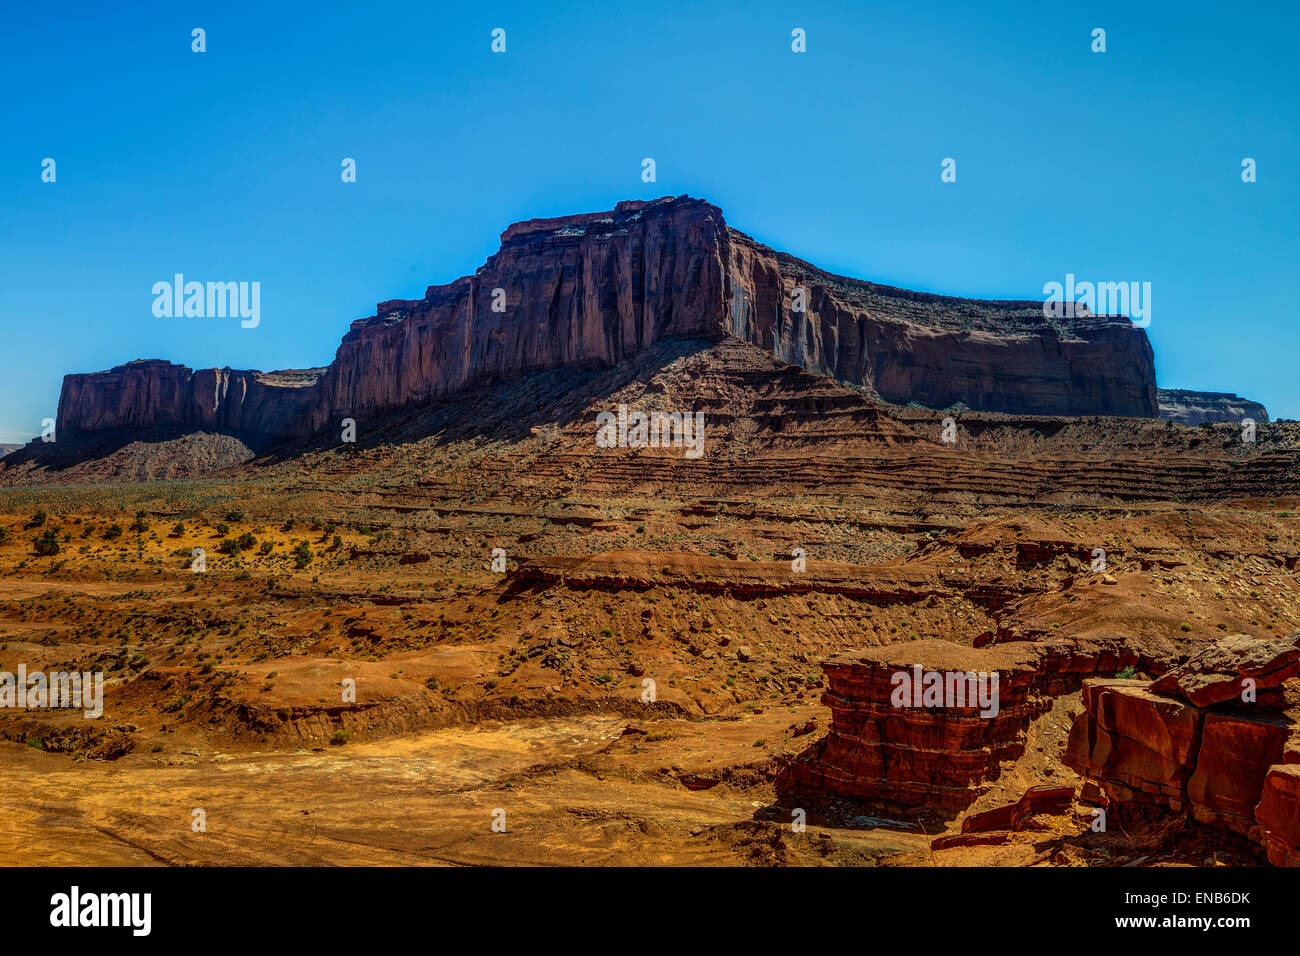 Monument Valley, az, usa Stockfoto